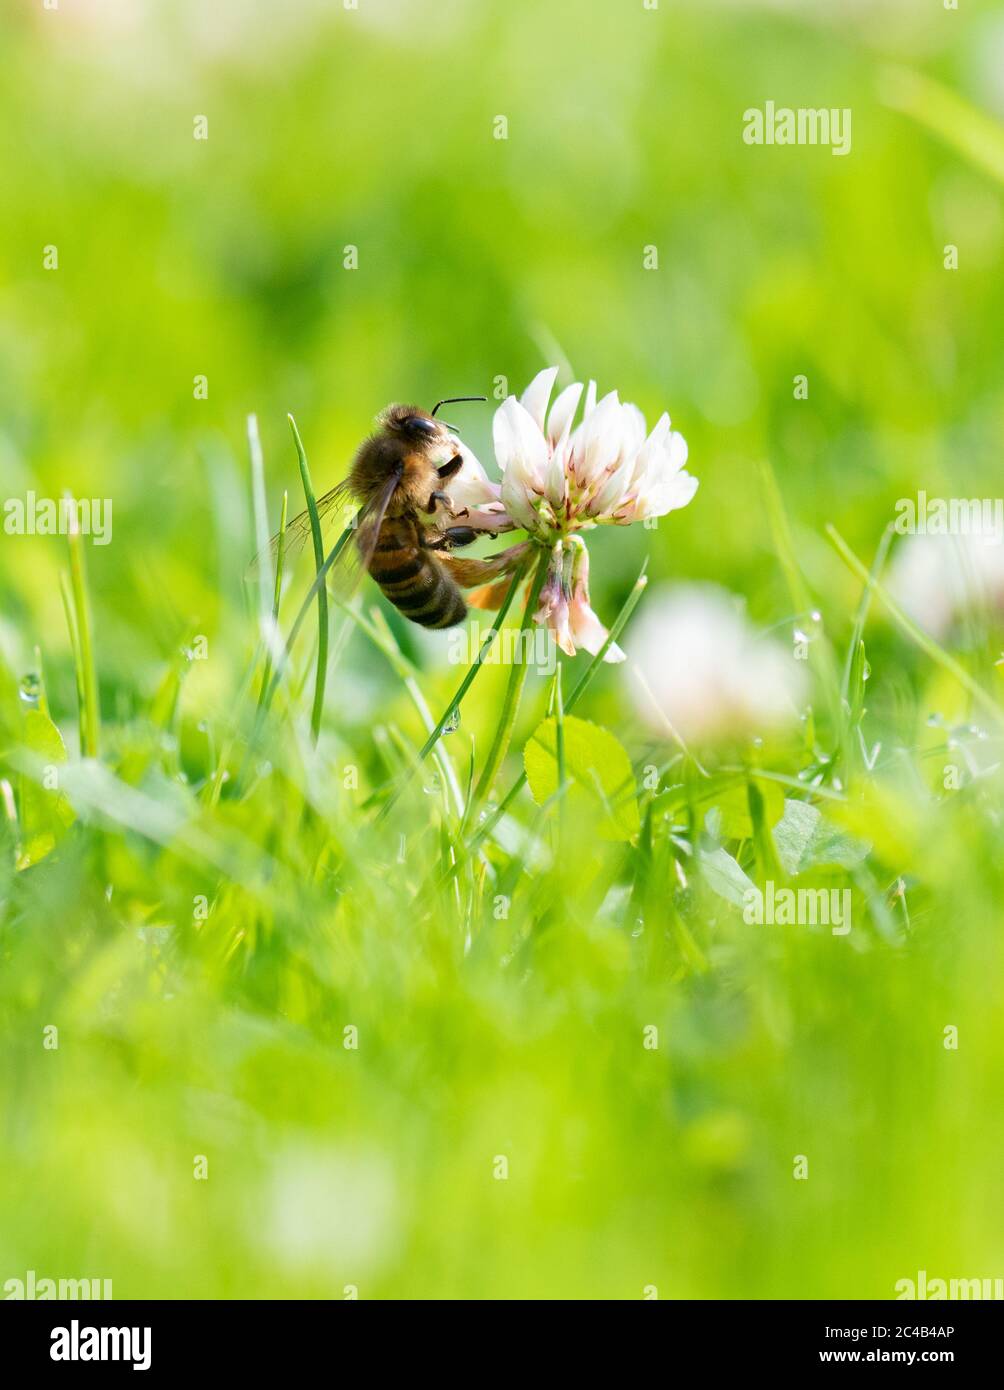 Honigbiene - APIs - Fütterung von weißem Klee (Trifolium repens) wächst in Garten Rasen, der länger für die Tierwelt wachsen dürfen - Großbritannien Stockfoto